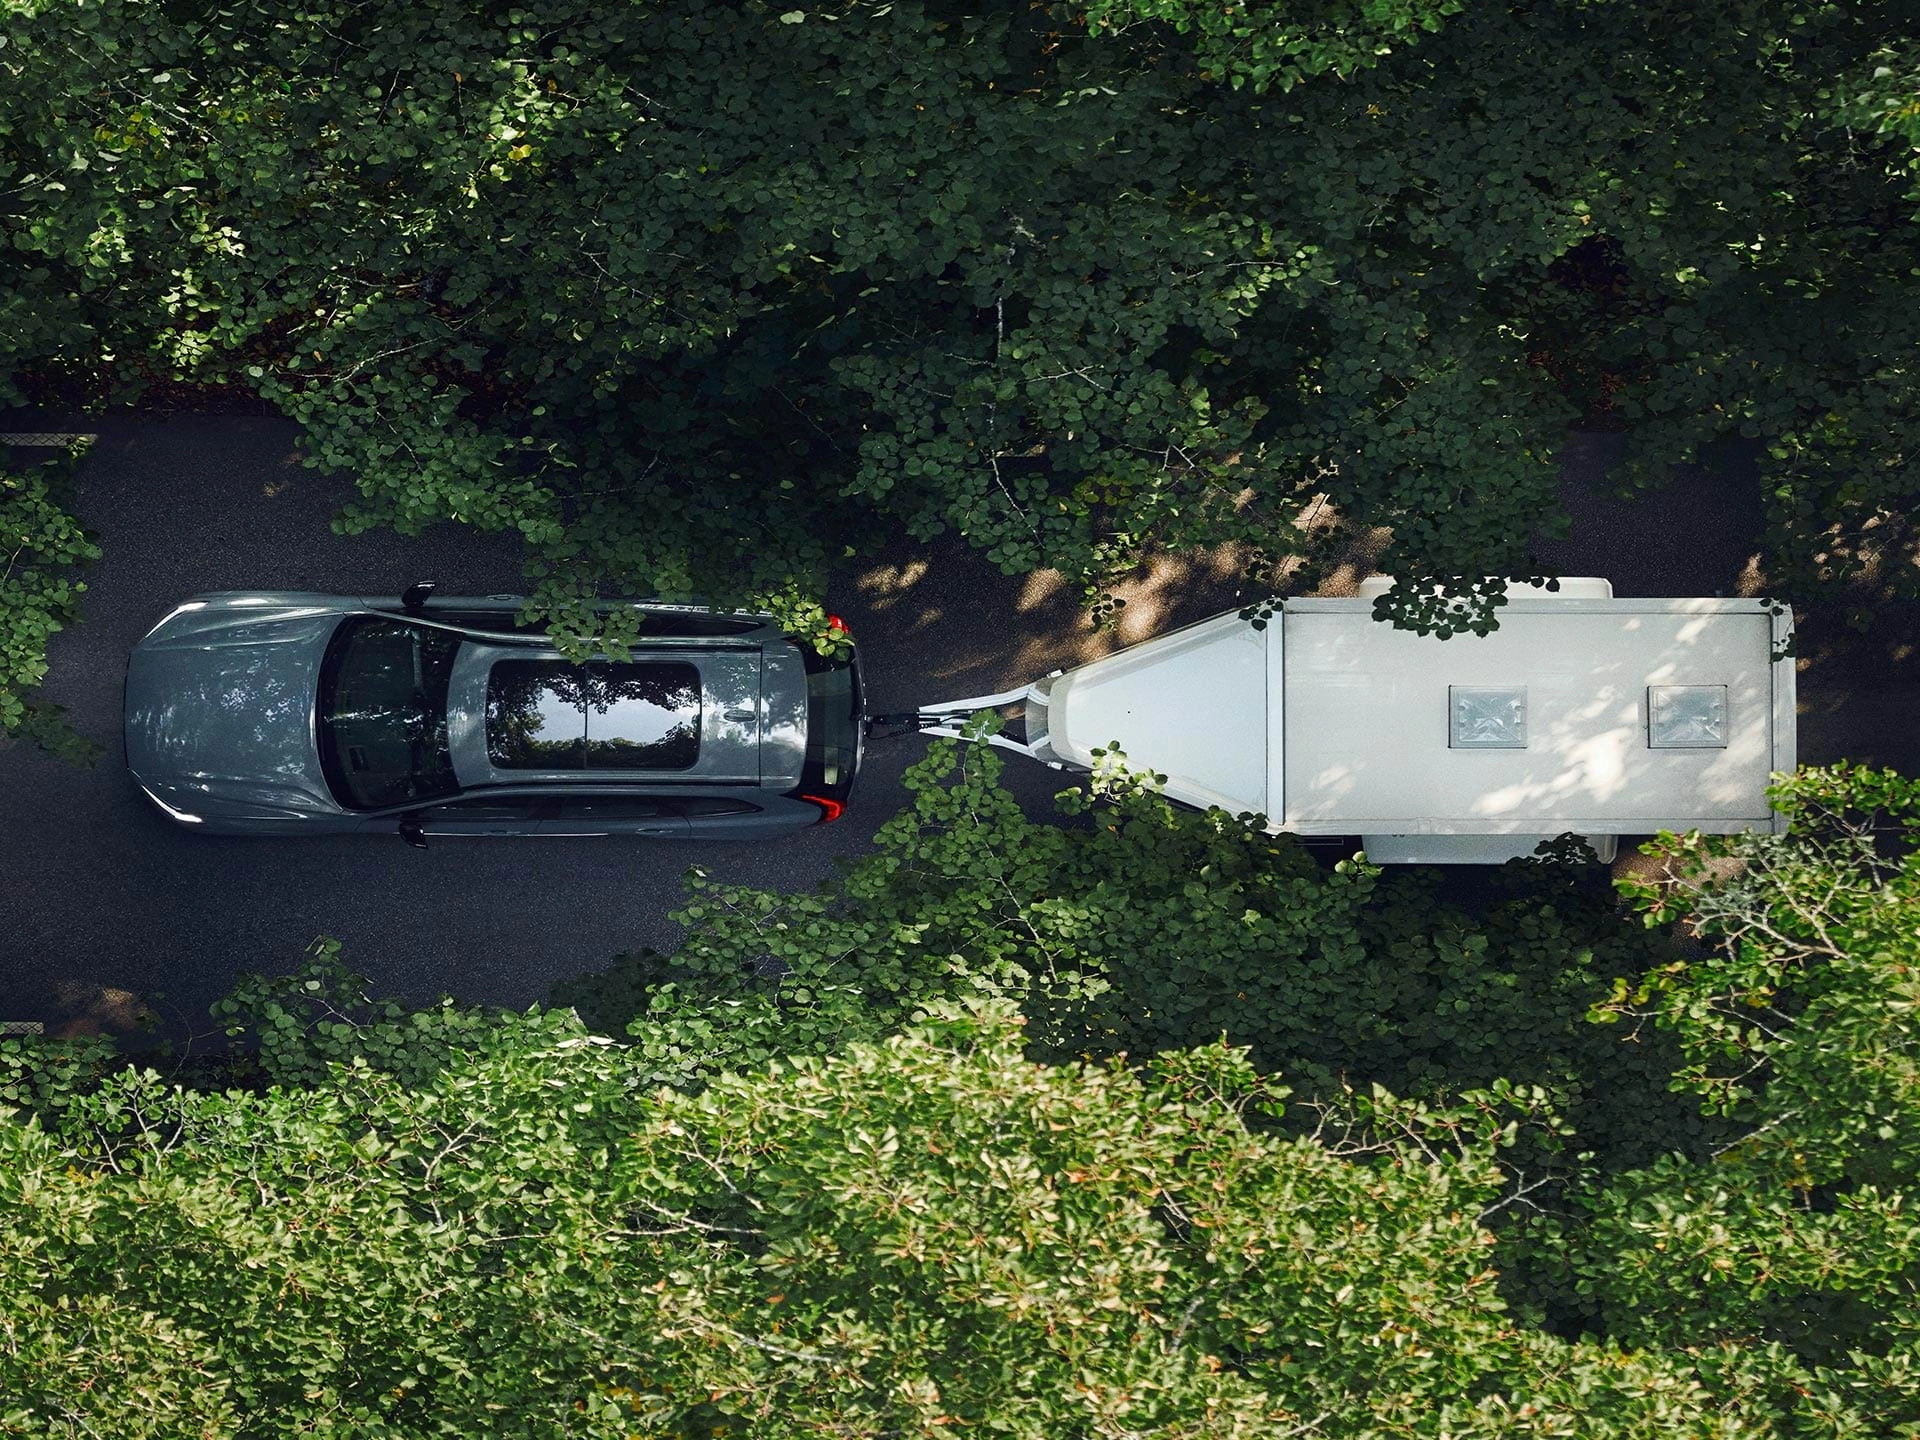 Güneşli bir günde yapraklarla kaplı bir yolda beyaz römork çeken Volvo SUV'nin kuş bakışı görünümü.